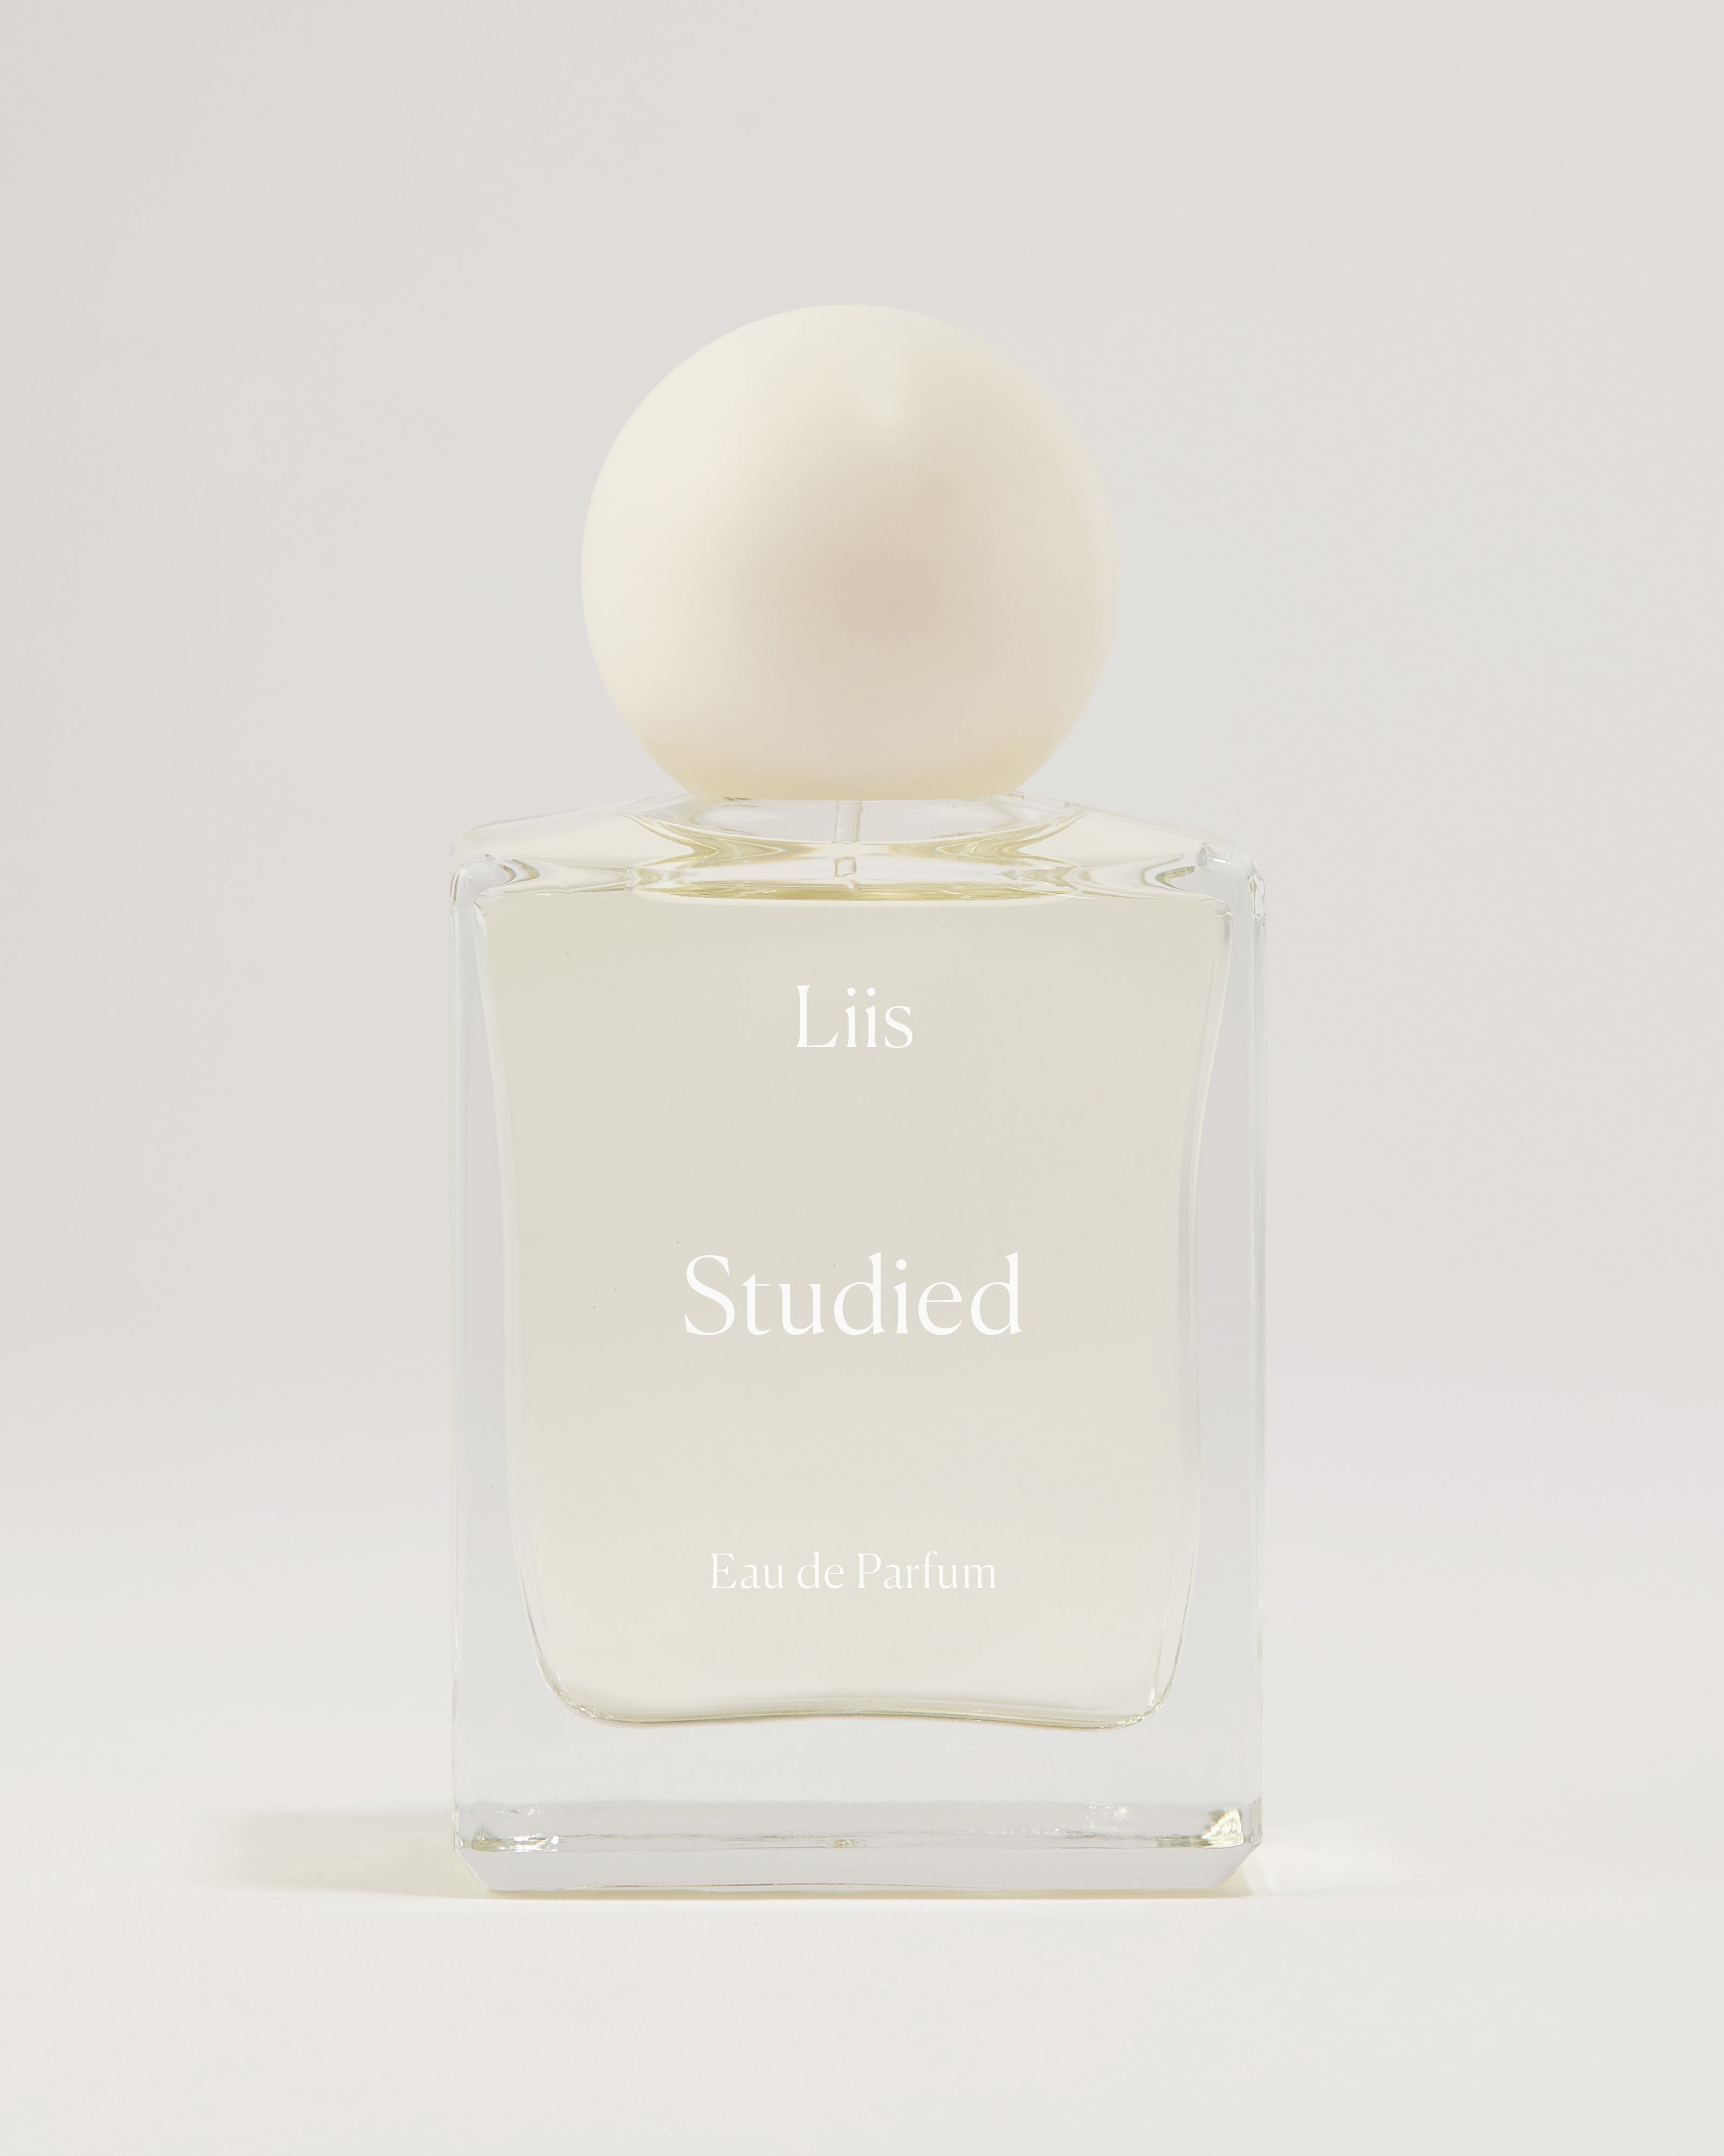 Liis Studied Eau de Parfum - Stèle